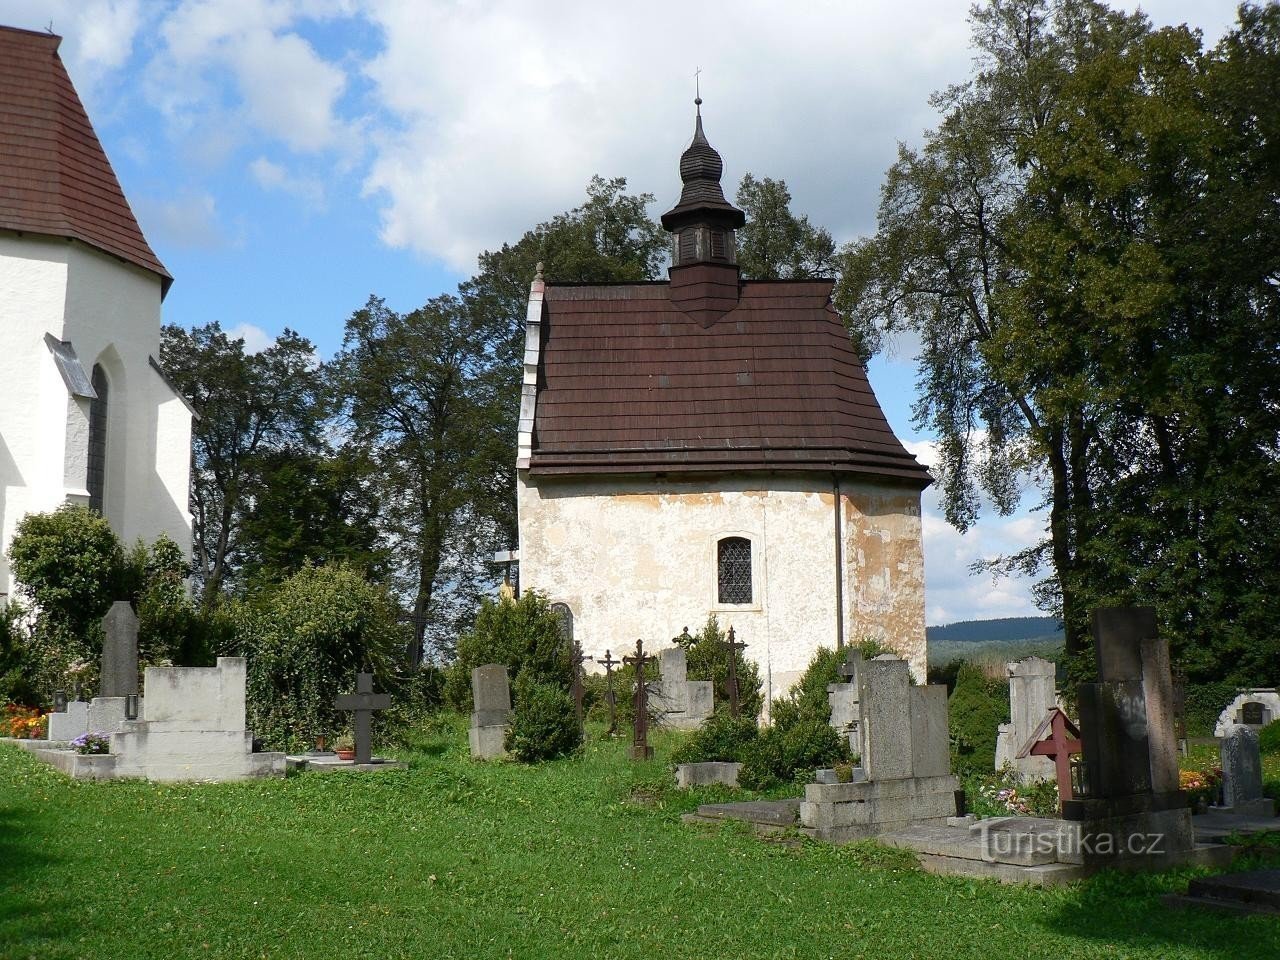 Kašperské Hory, chapel of St. Anne